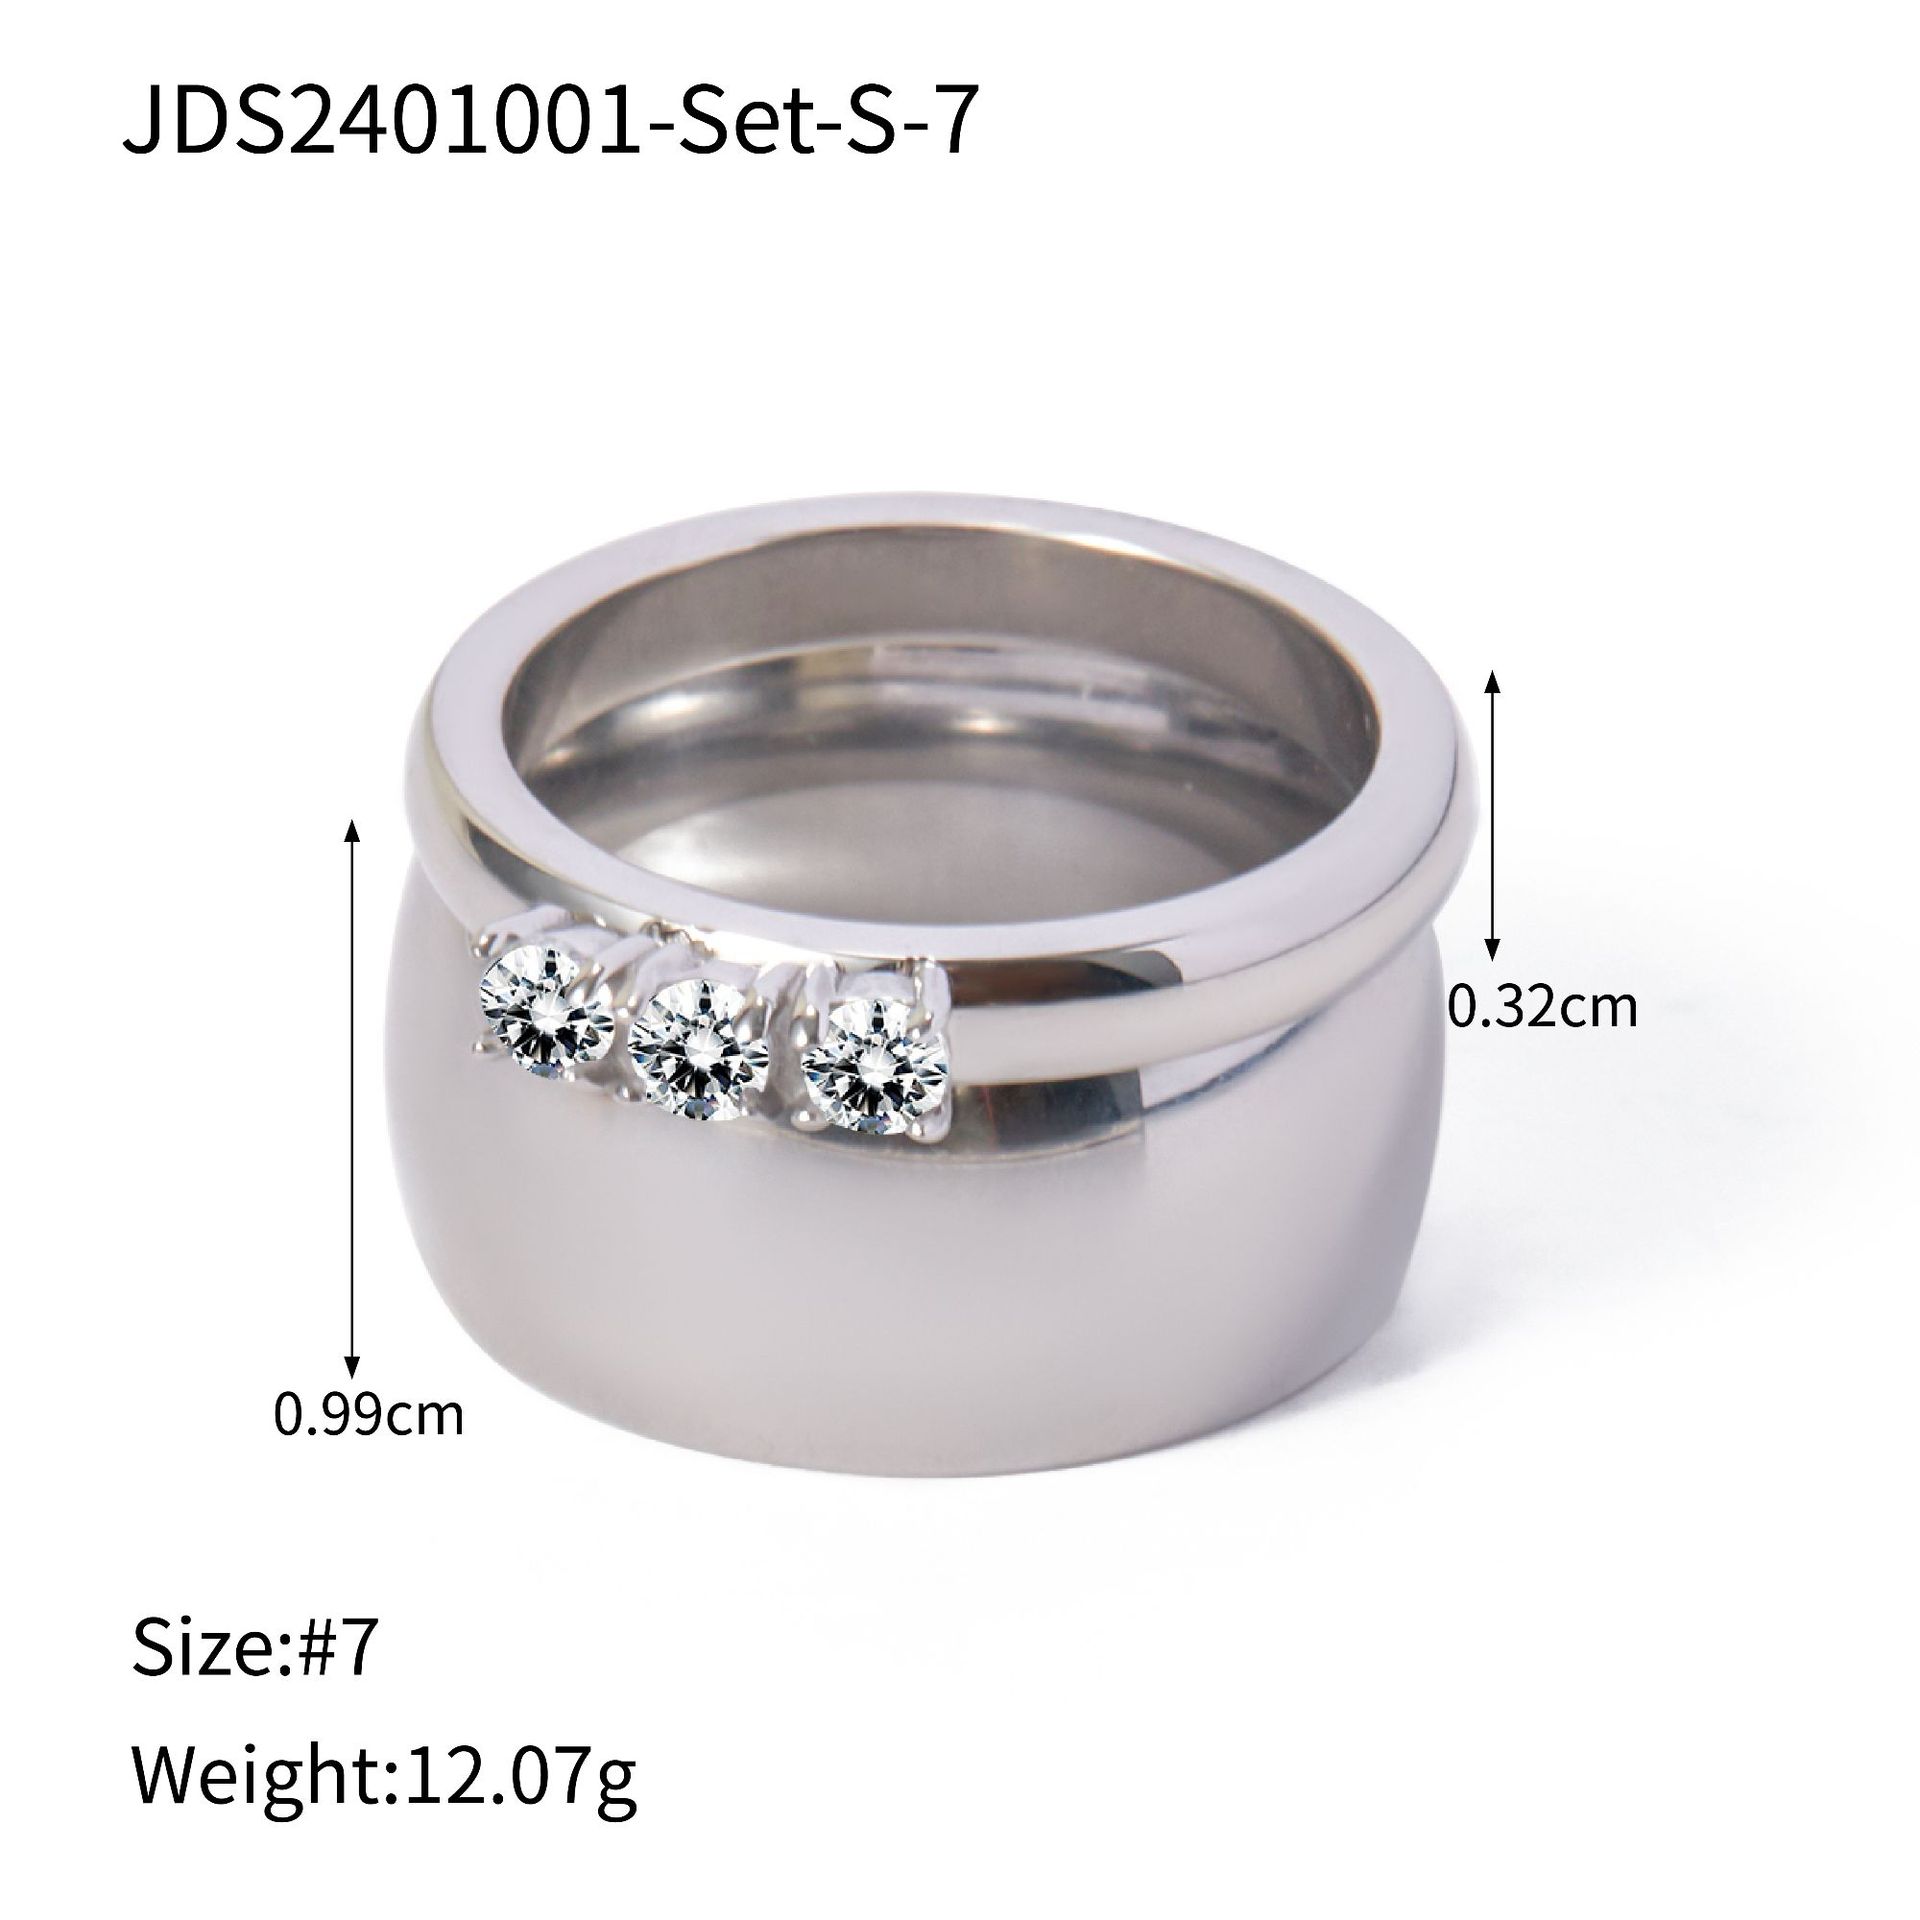 5:JDS2401001-Set-S-7